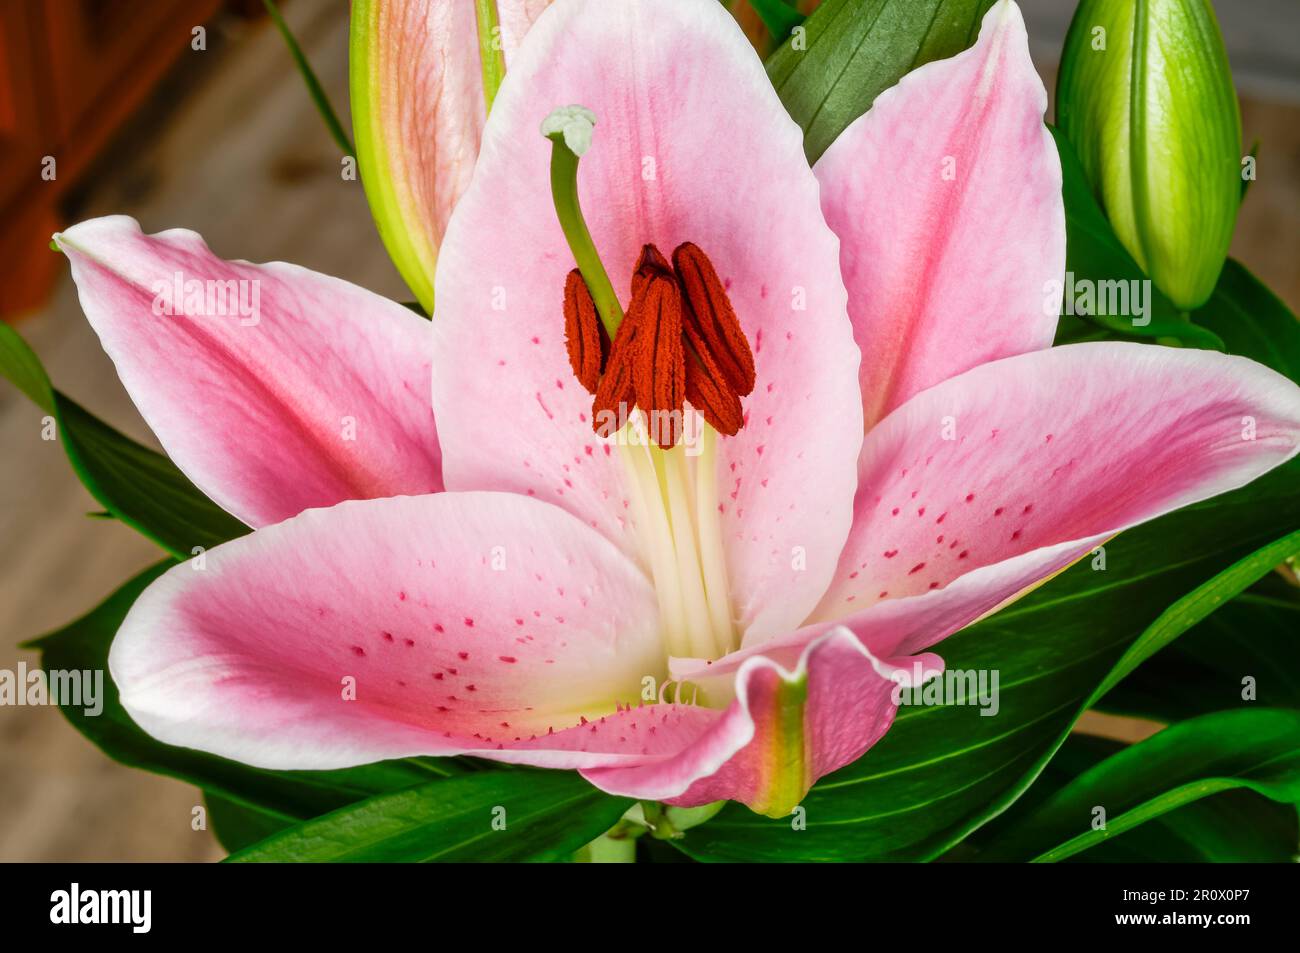 Asiatische Lilie, blühende farbenfrohe rosa Blume Nahaufnahme, dekorative elegante Blüten, Pflanzen aus der Gruppe von Hybriden, die aus ostasiatischen Arten stammen Stockfoto